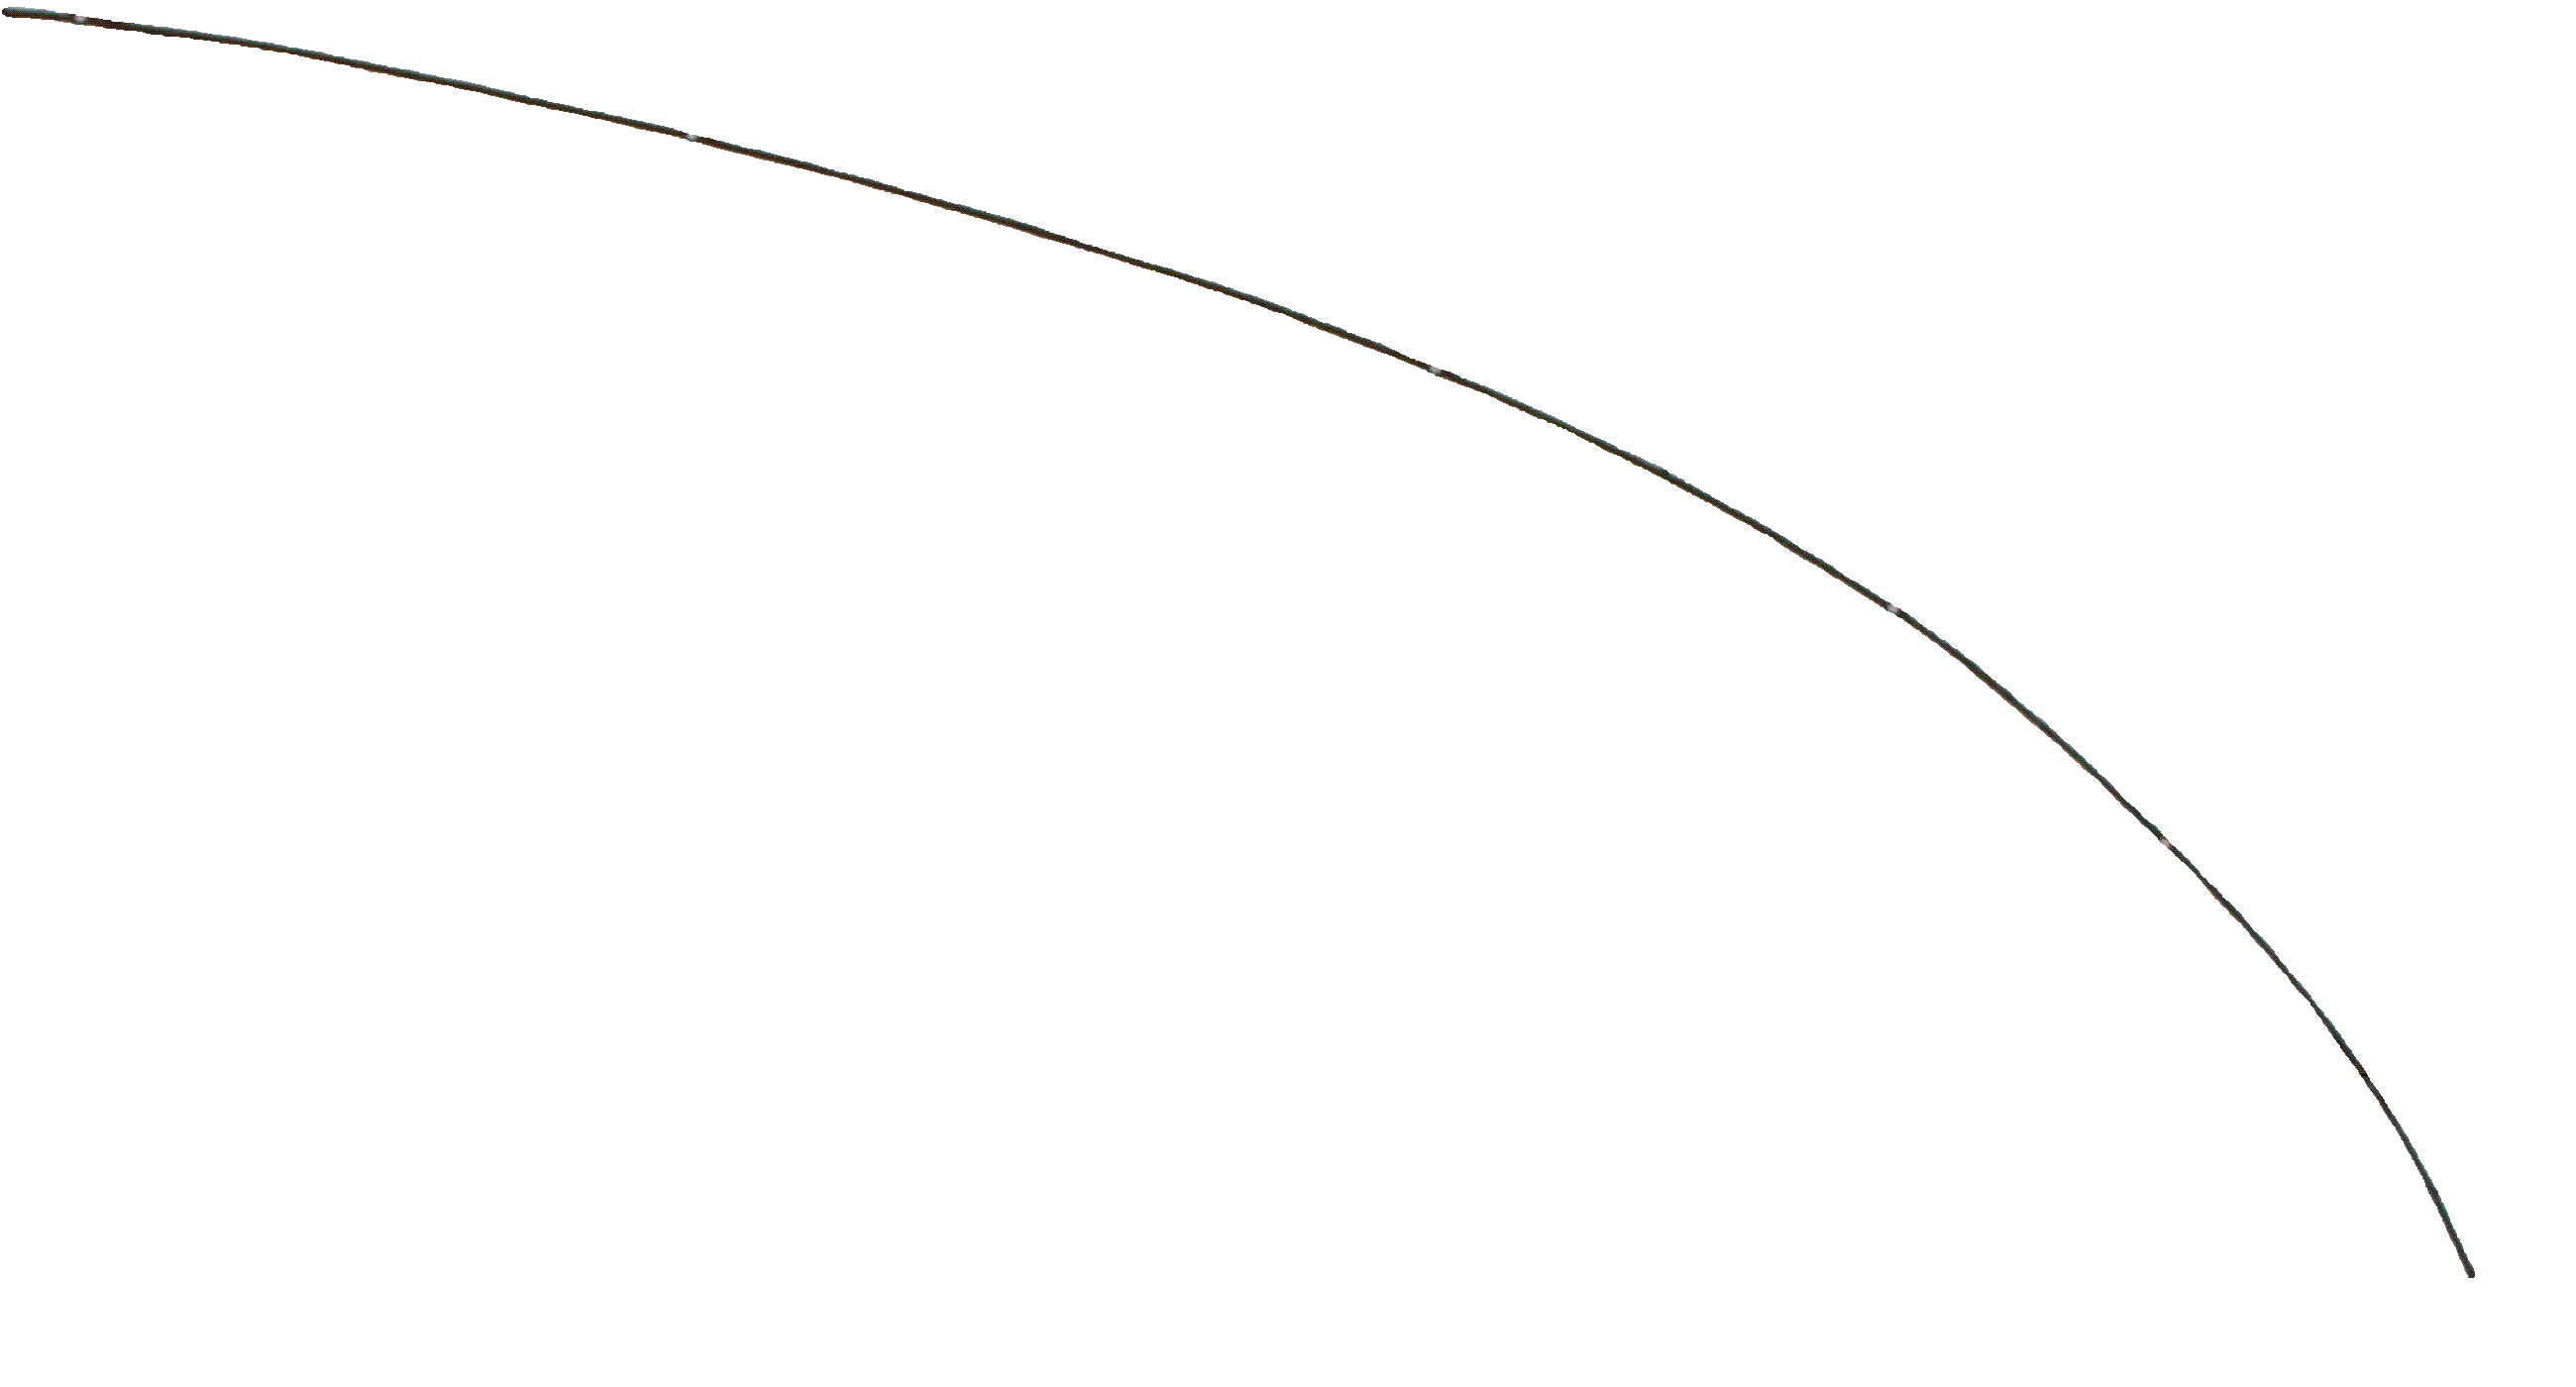 Kalibrierdiagramm - Vorlage mit Graph